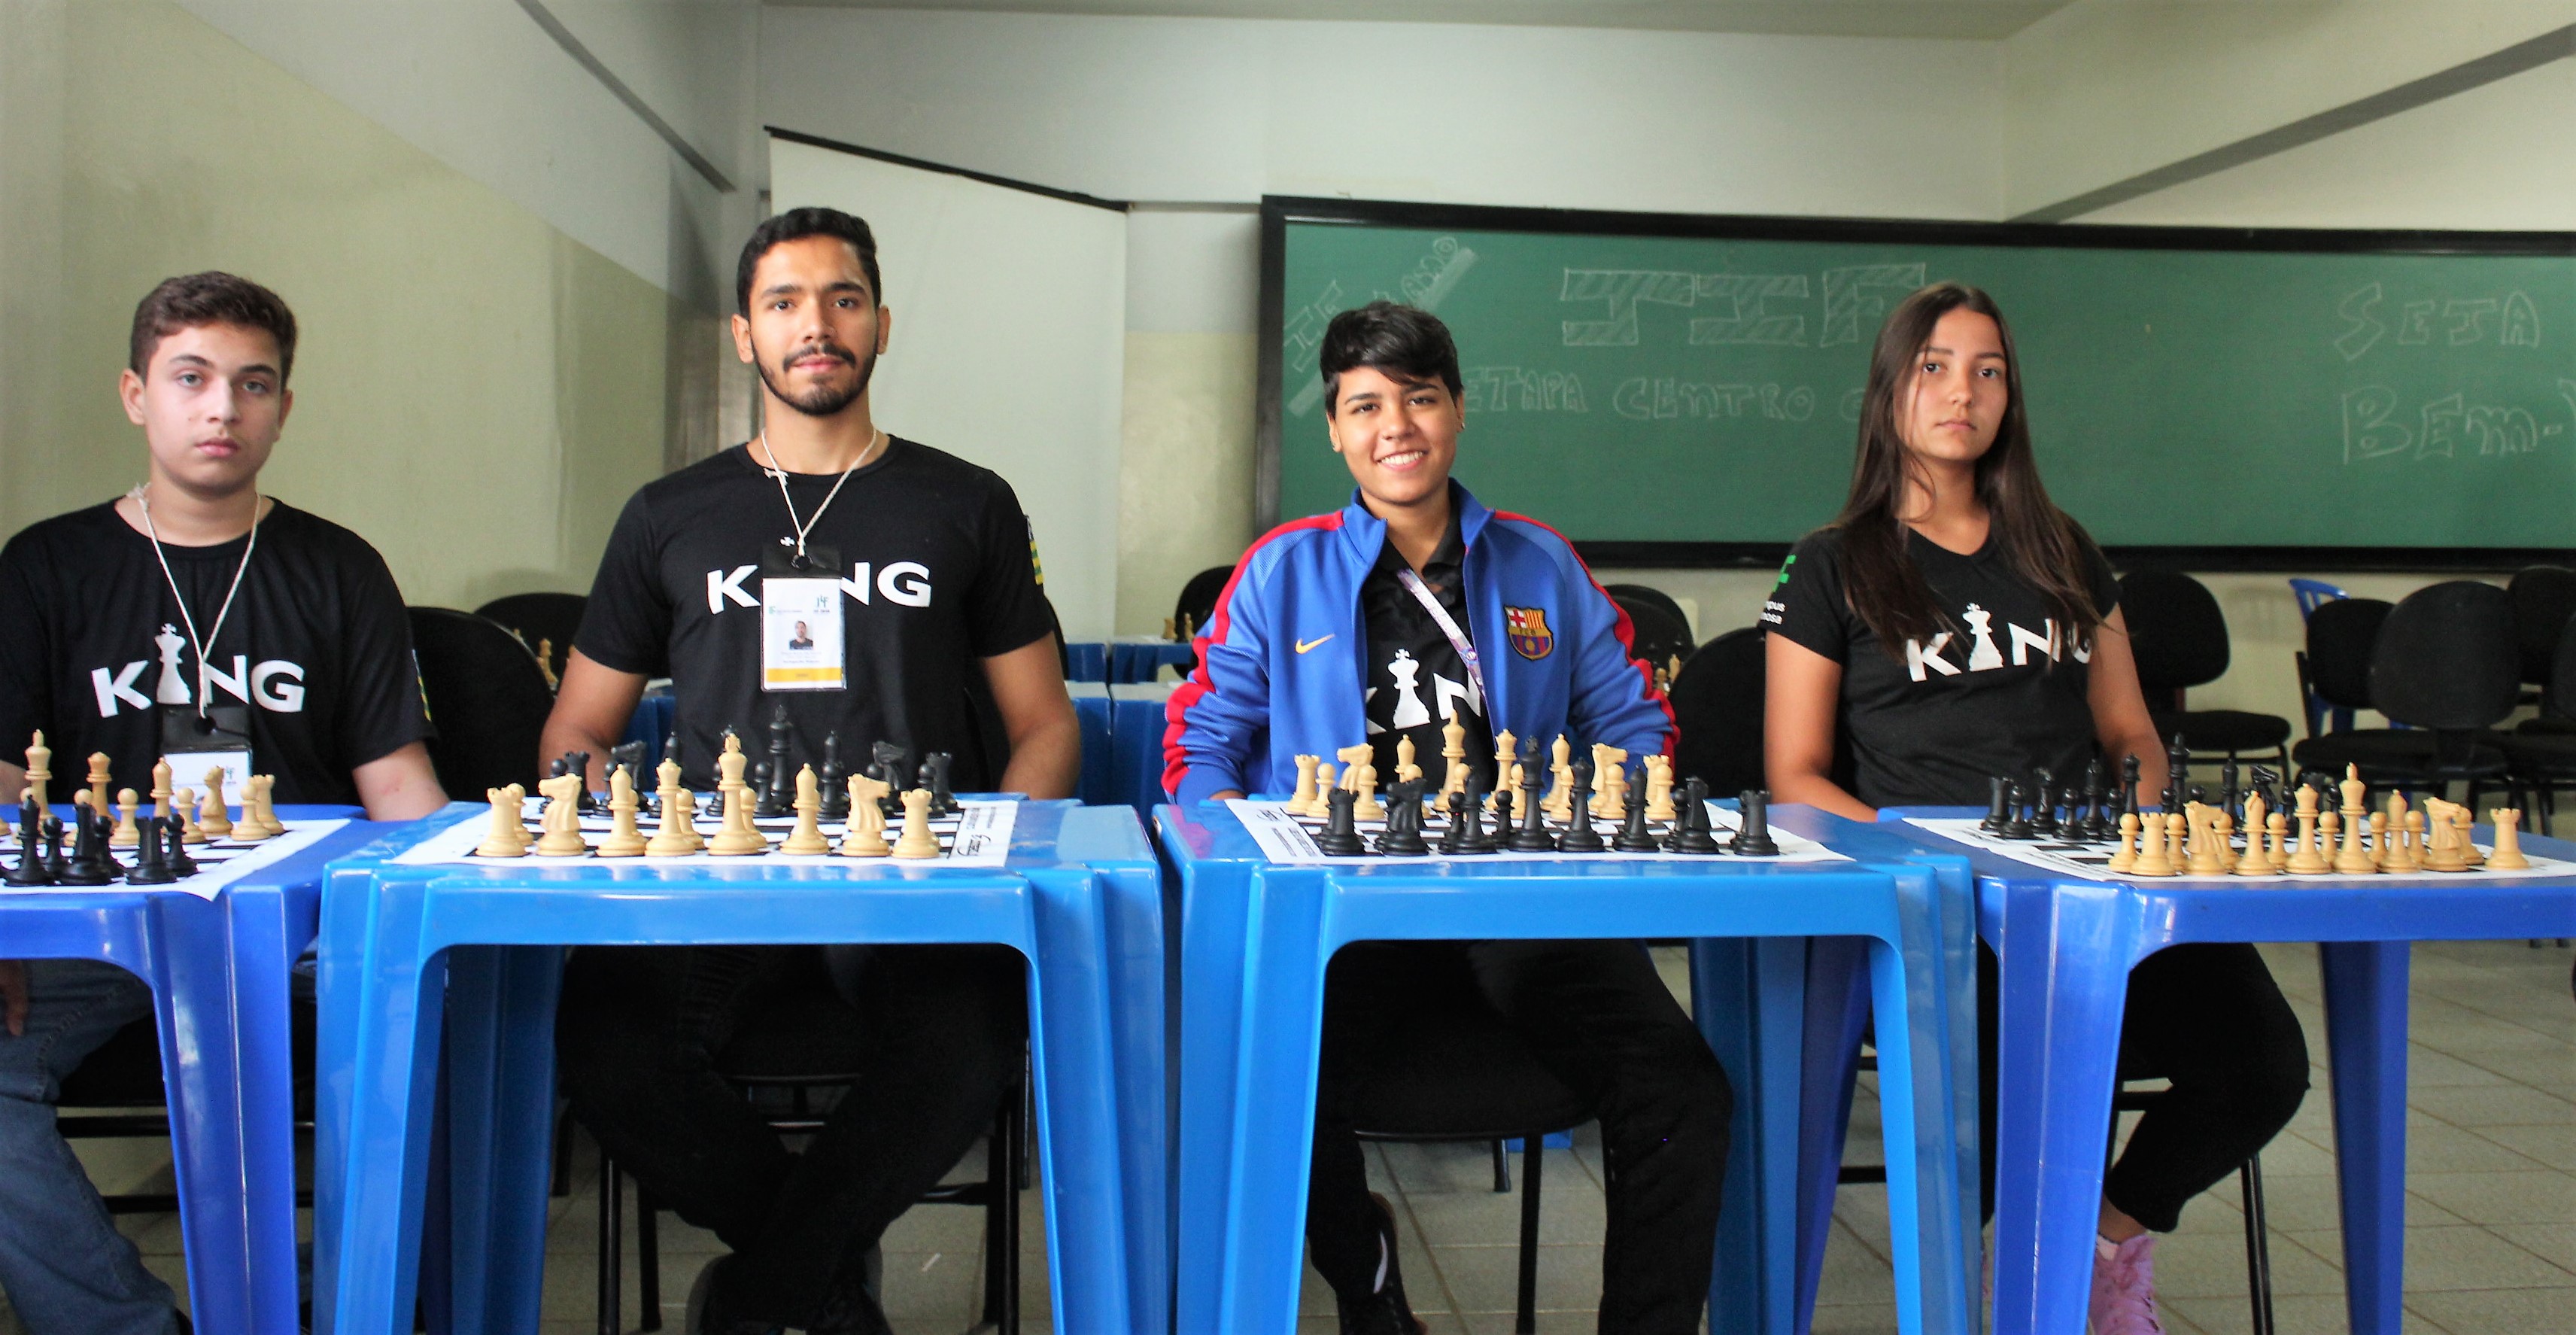 Equipe de xadrez do IFG diz estar preparada para a disputa